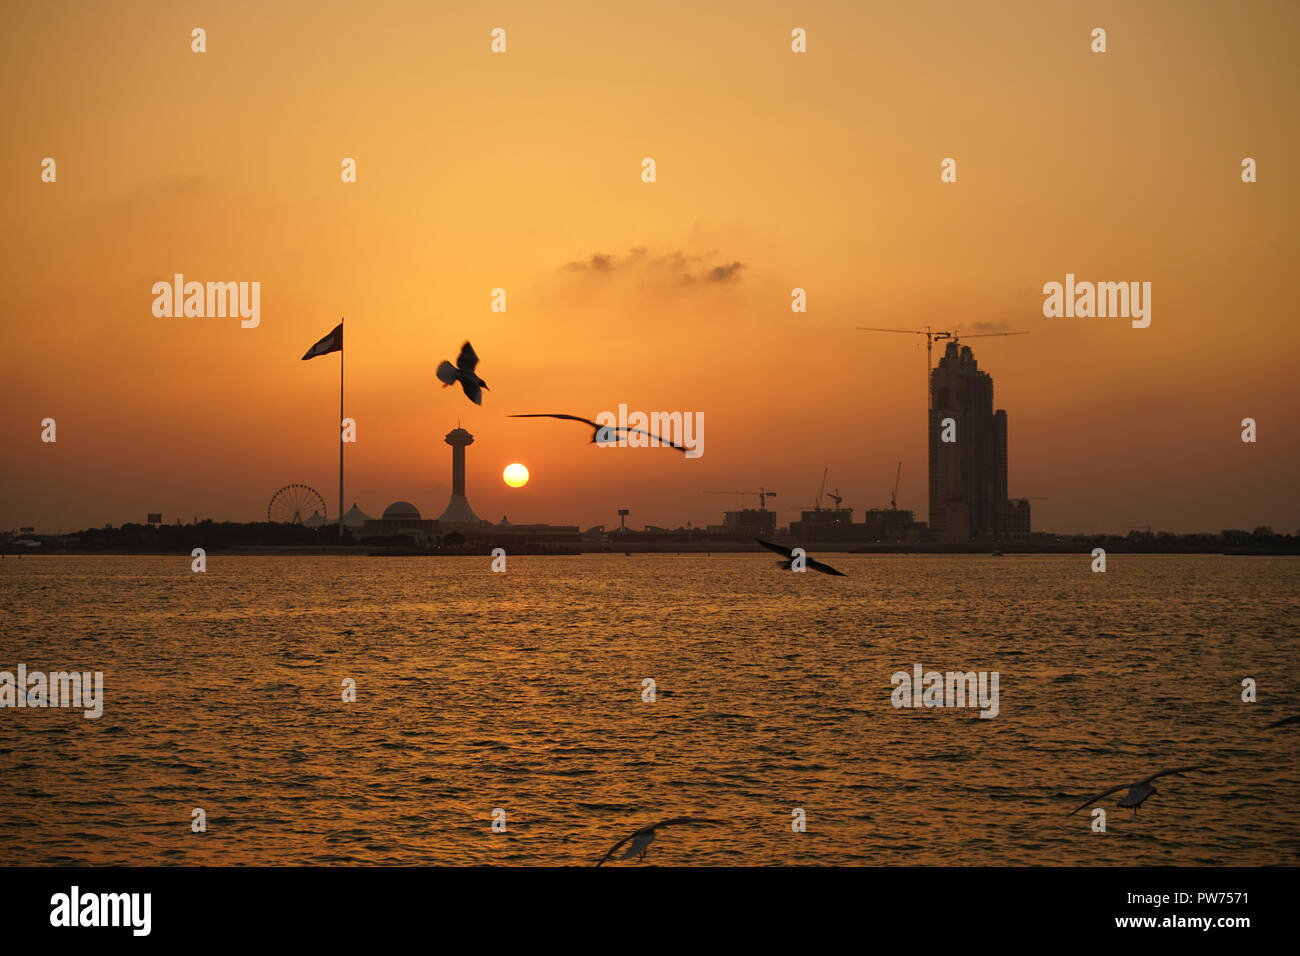 Sonnenuntergang am Corniche Strand, Persischer Golf, Abu Dhabi, Emirats Abu Dhabi, Vereinigte Arabische Emirate Stock Photo